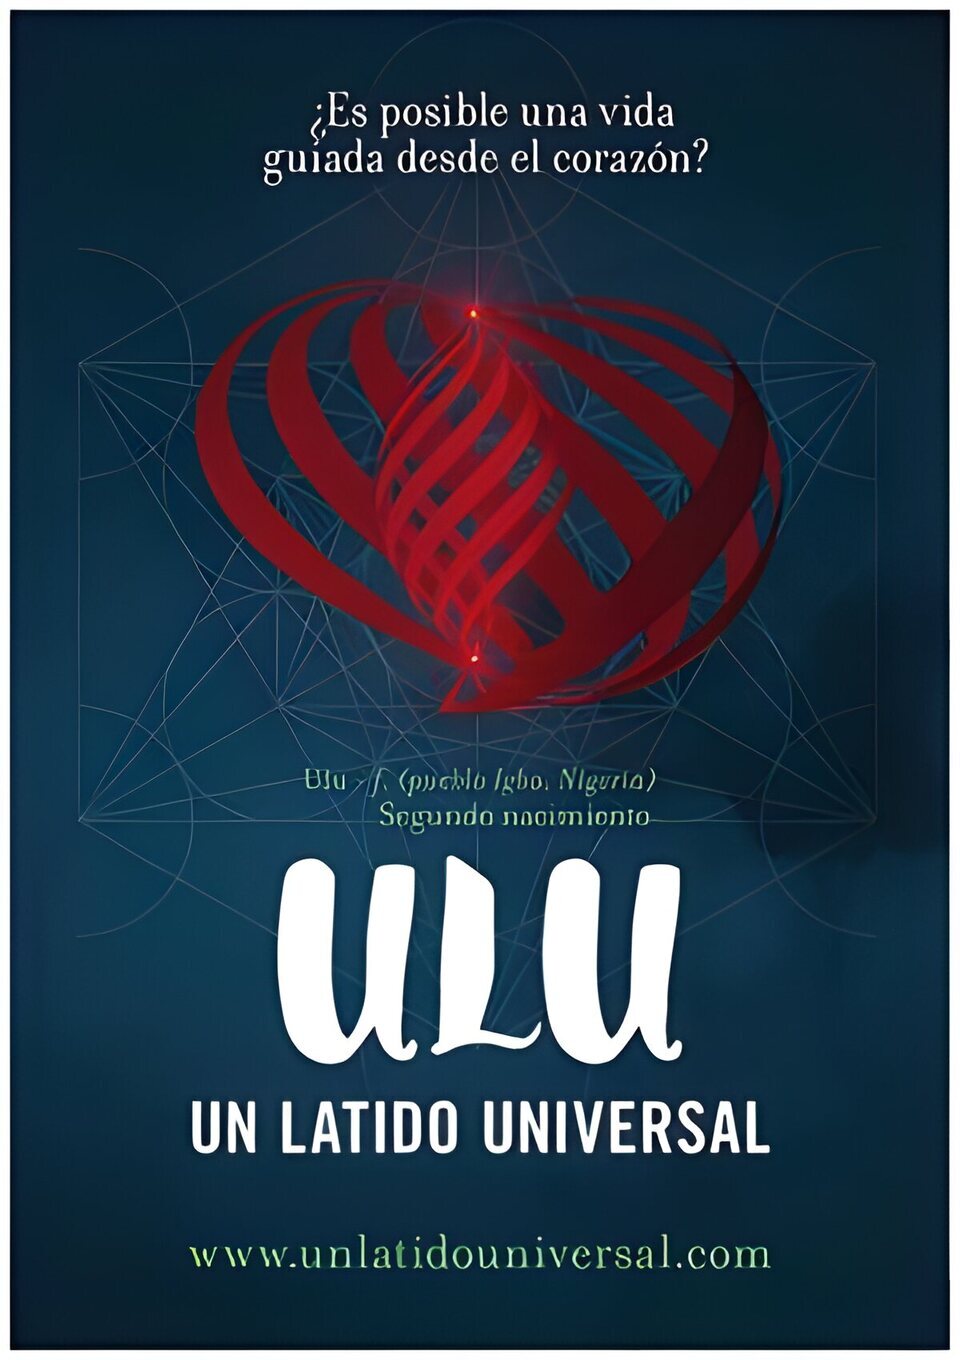 Cartel de ULU, Un latido Universal - España